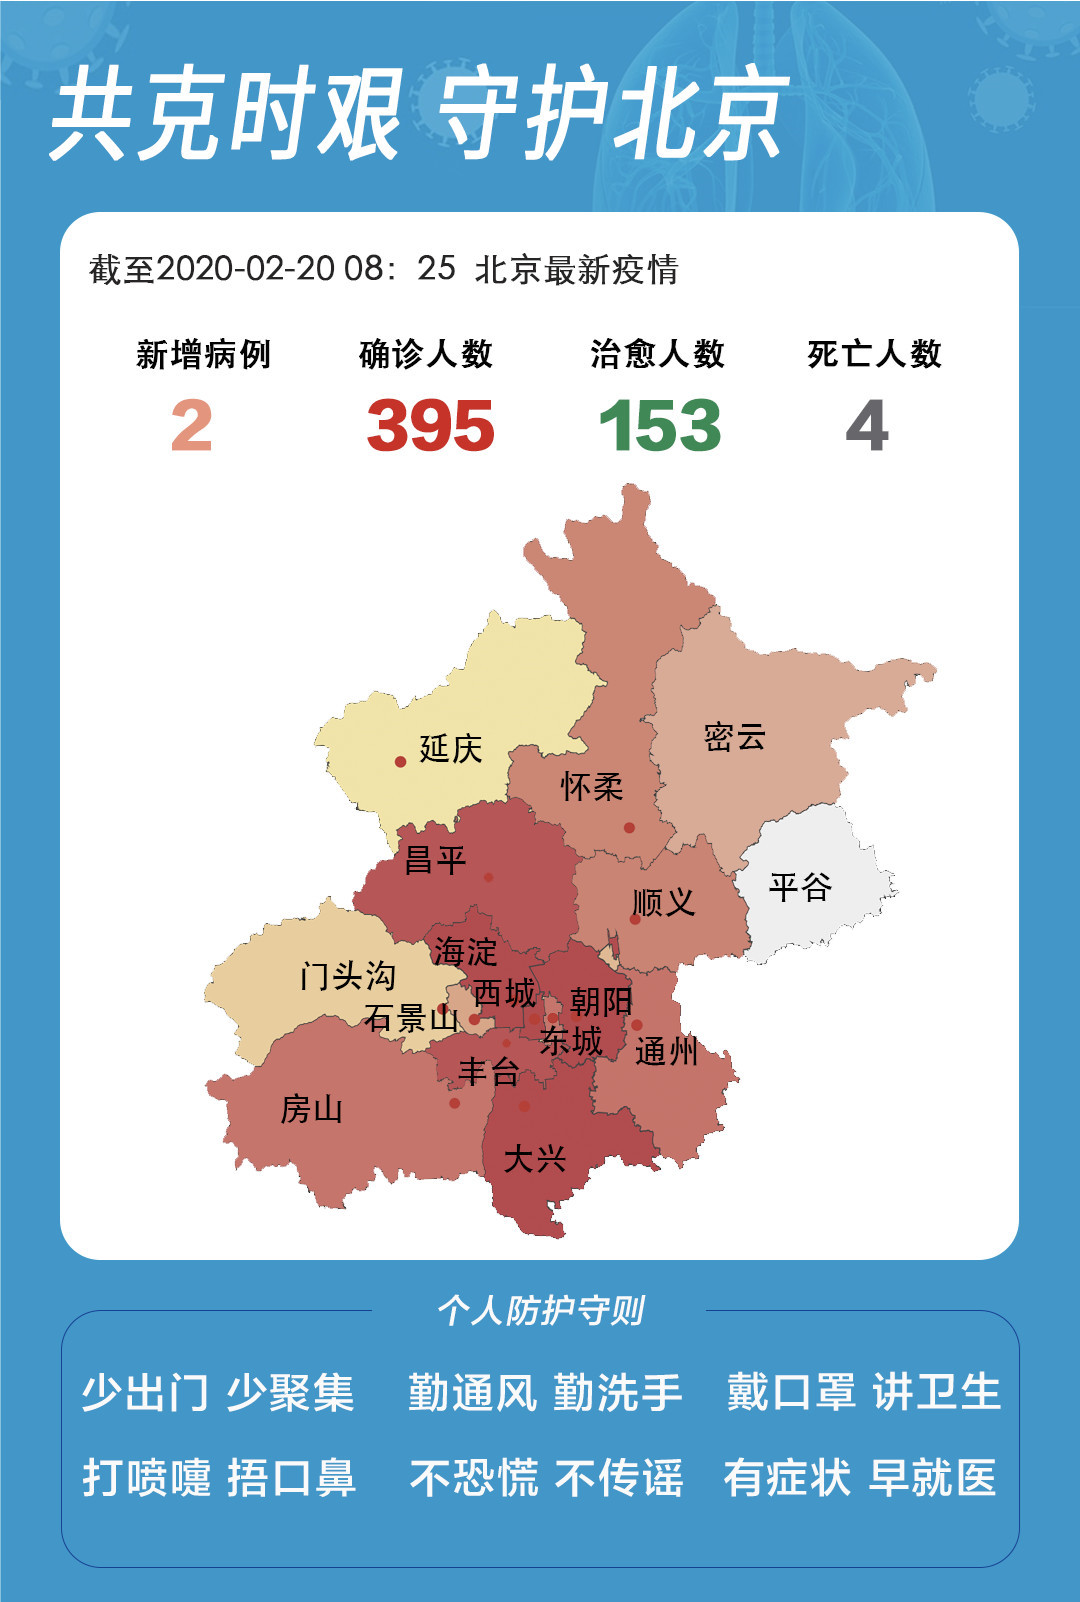 北京市疫情最新通报新发确诊病例到过哪些地方